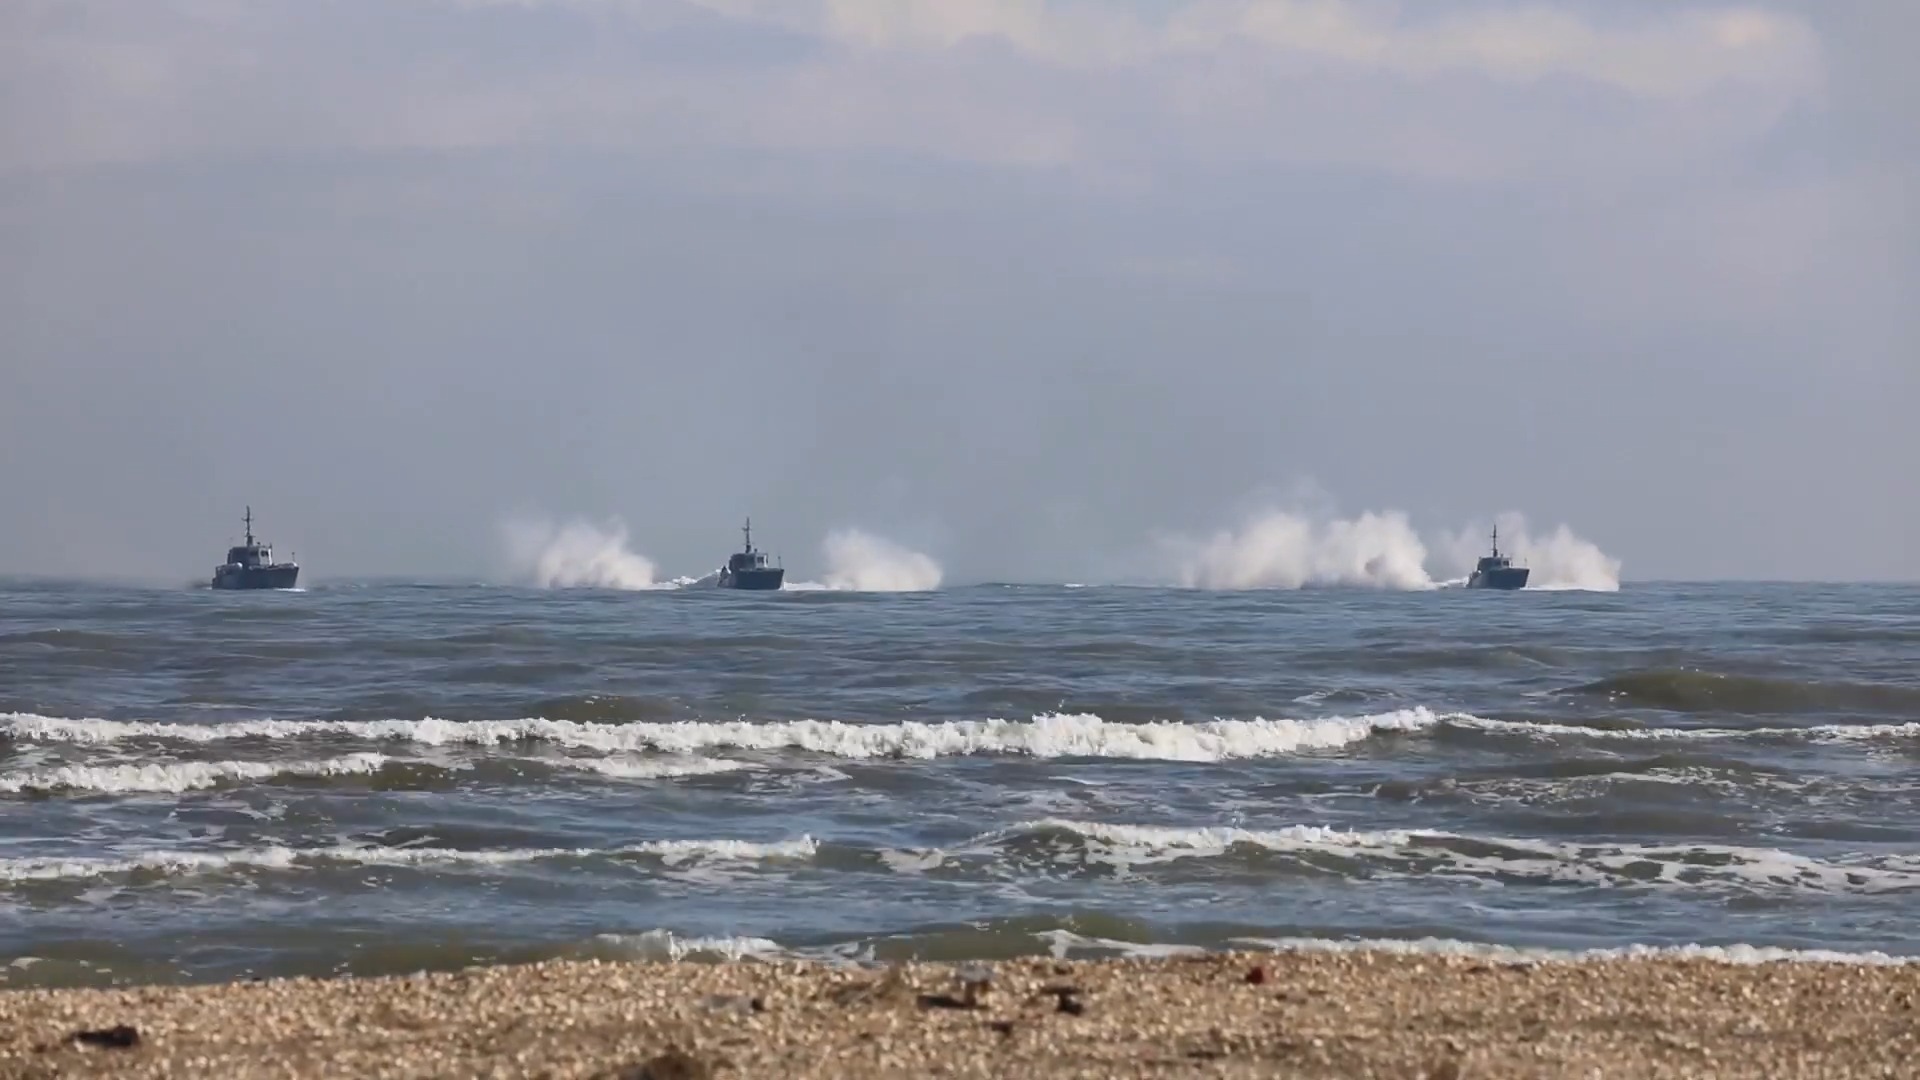 Russian Navy Caspian Flotilla marine infantry 